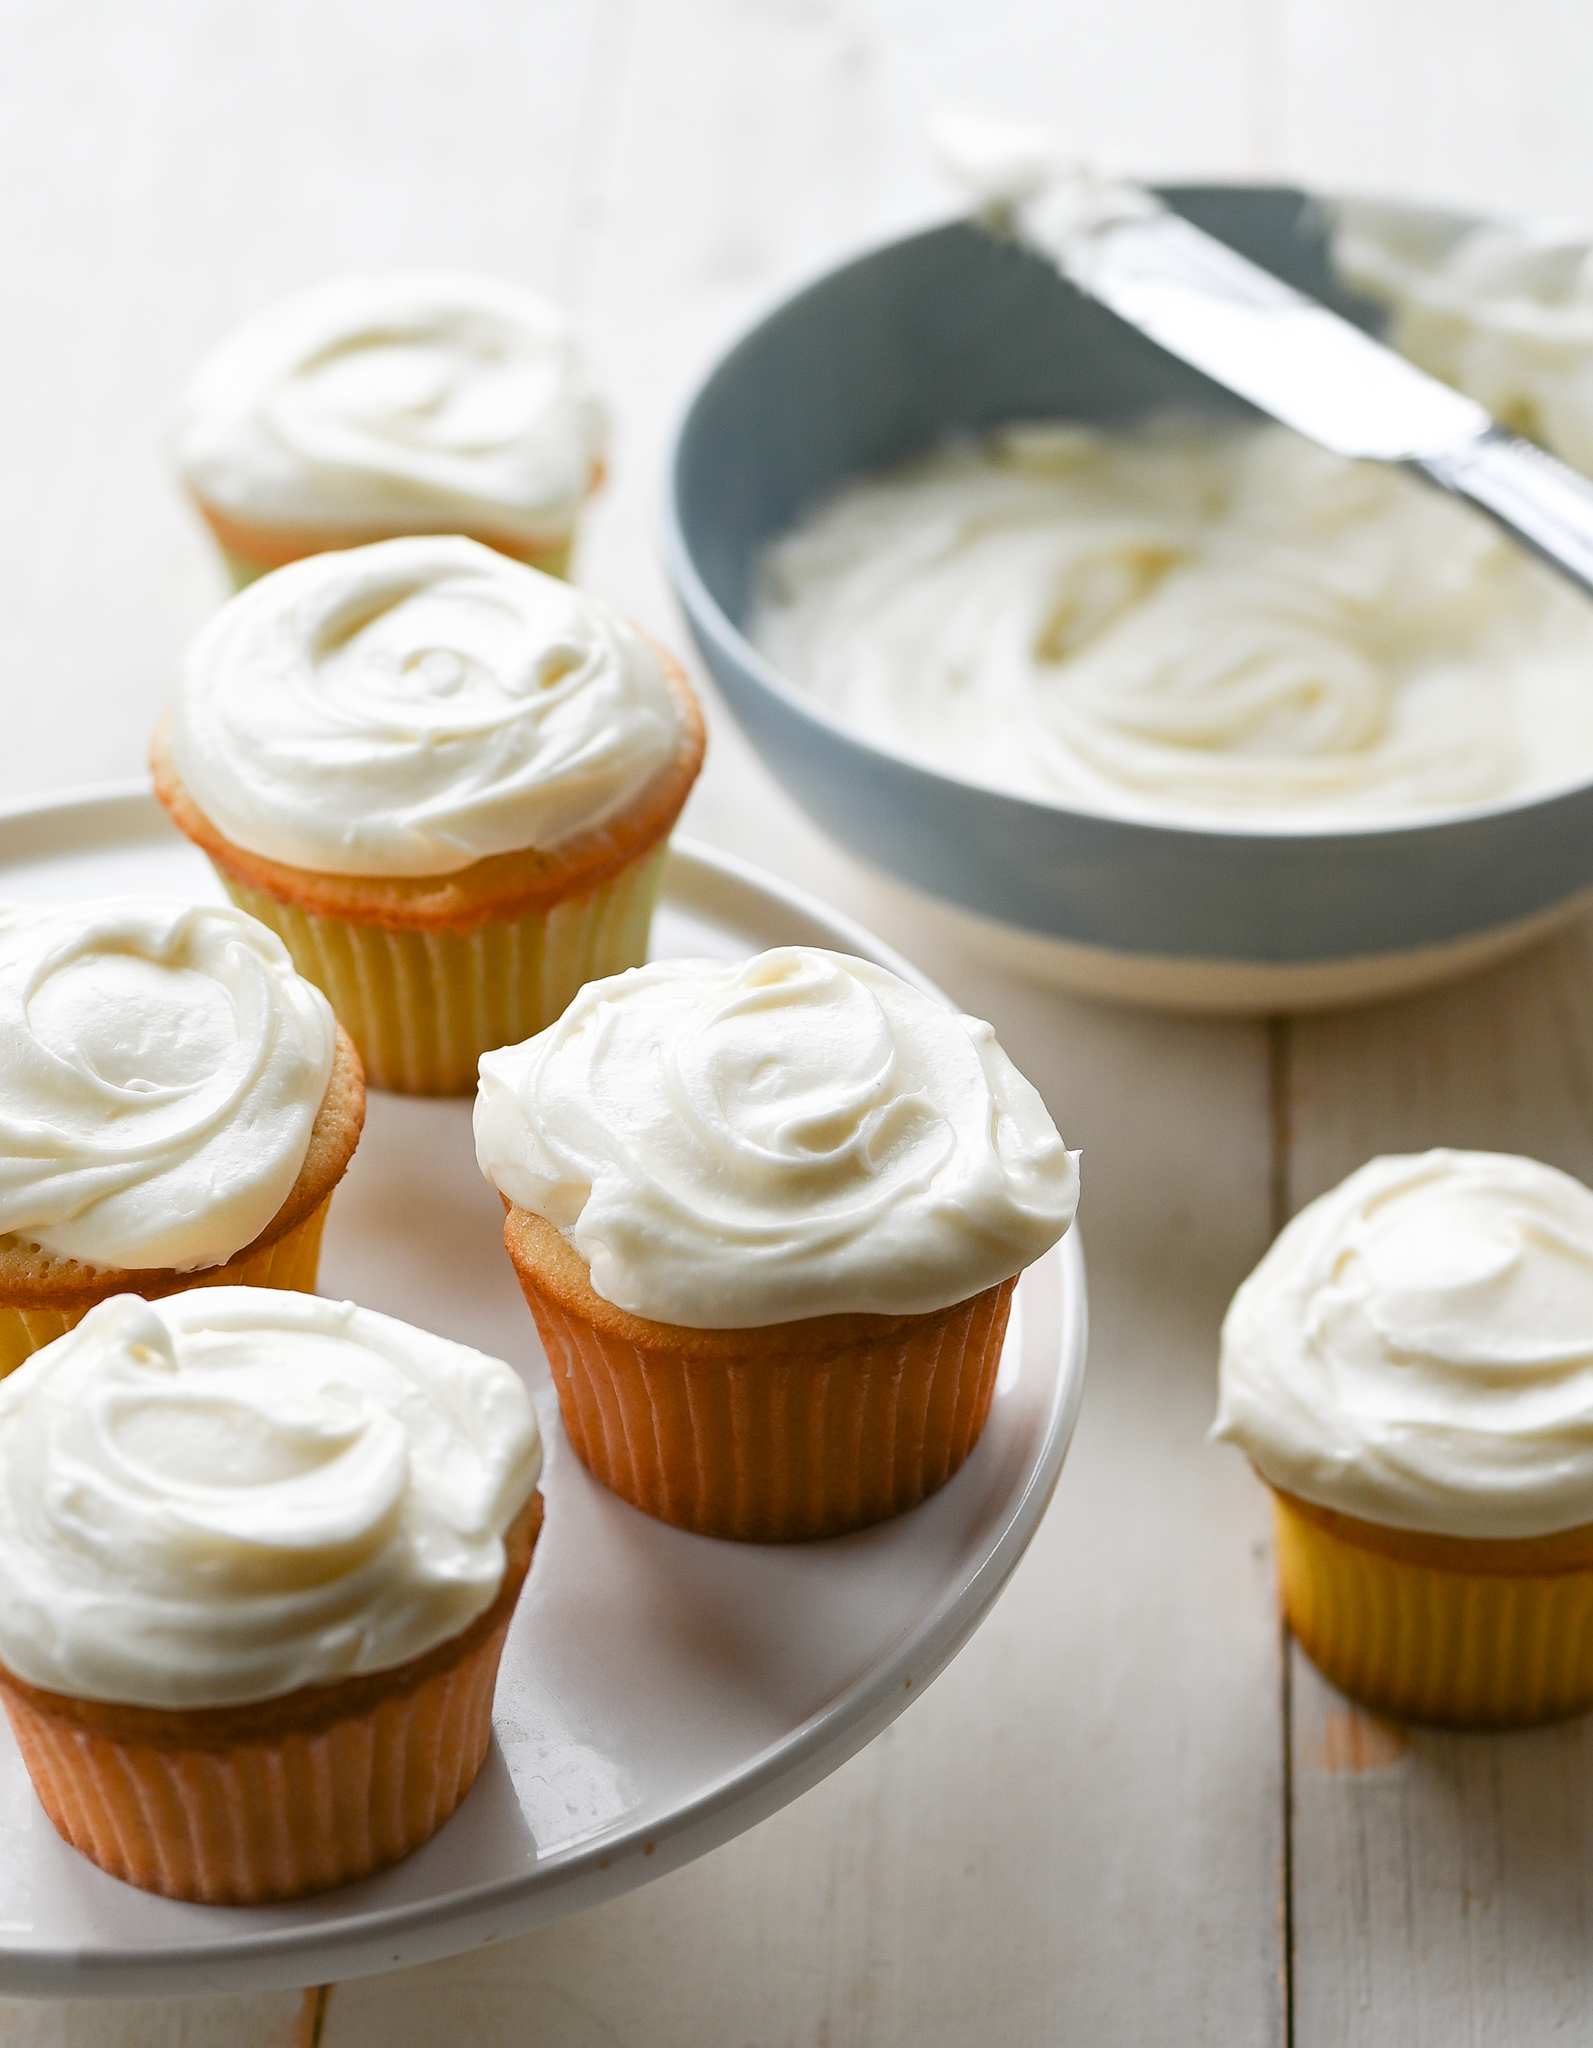 Cupcakes à la vanille – Il était une fois un chef